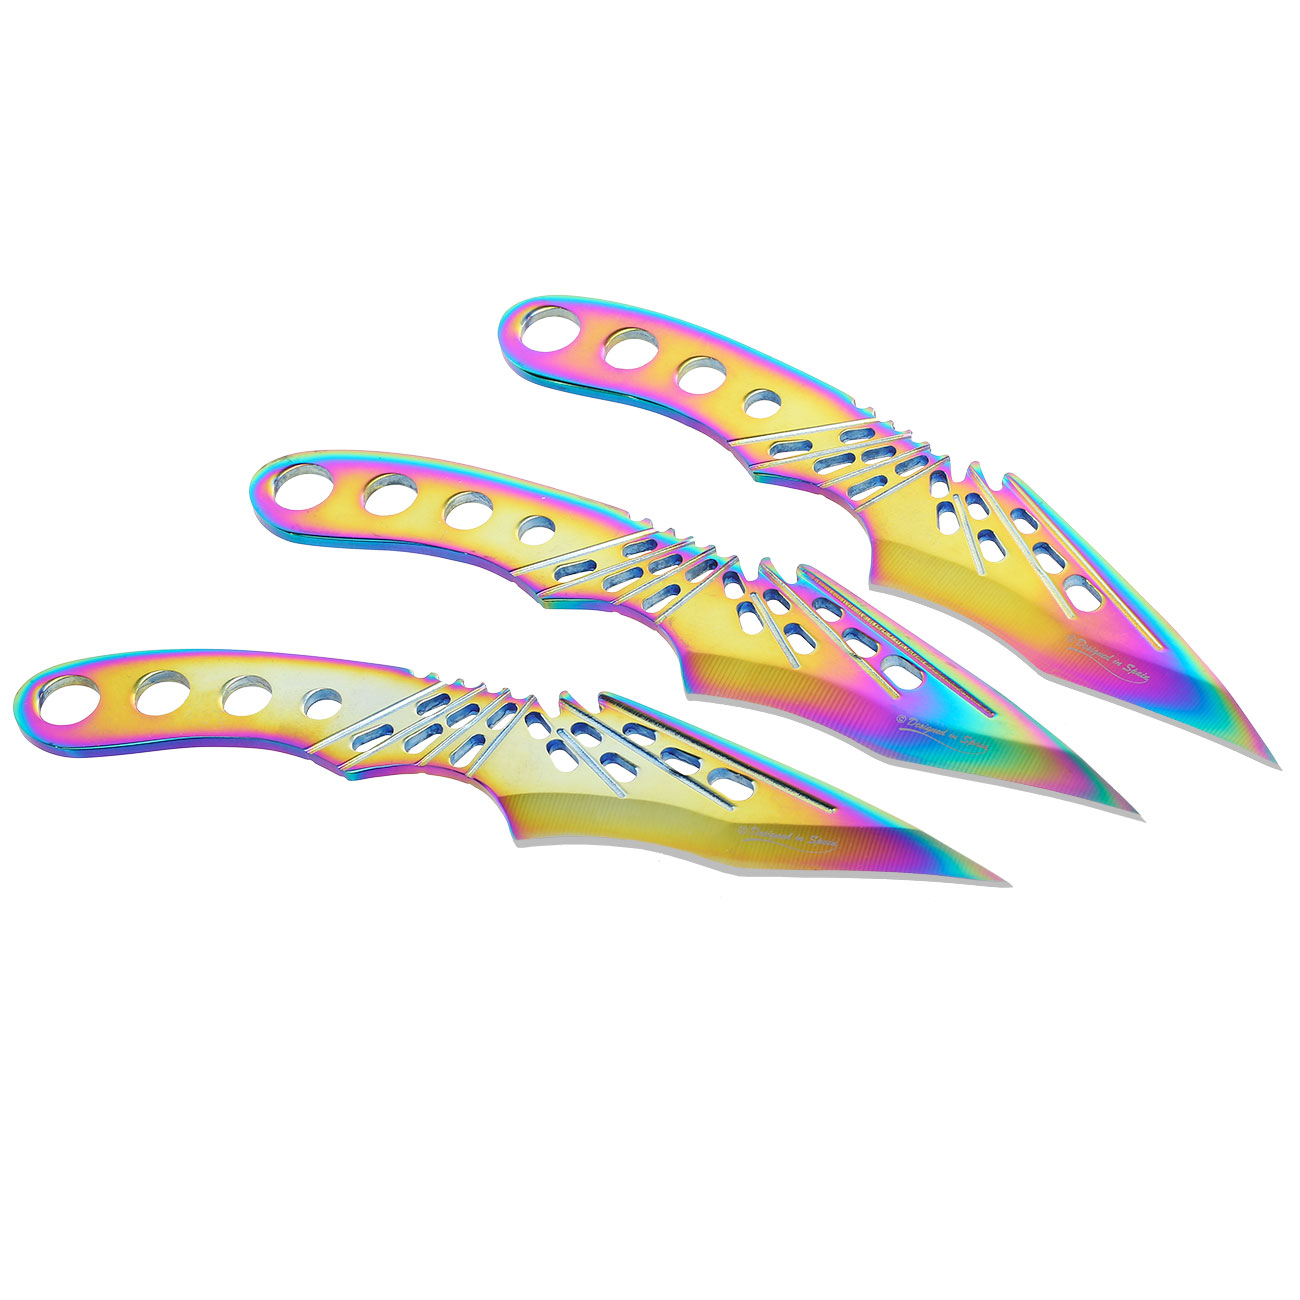 Rainbow Wurfmesserset 3 tlg. inkl. Nylonetui Bild 1